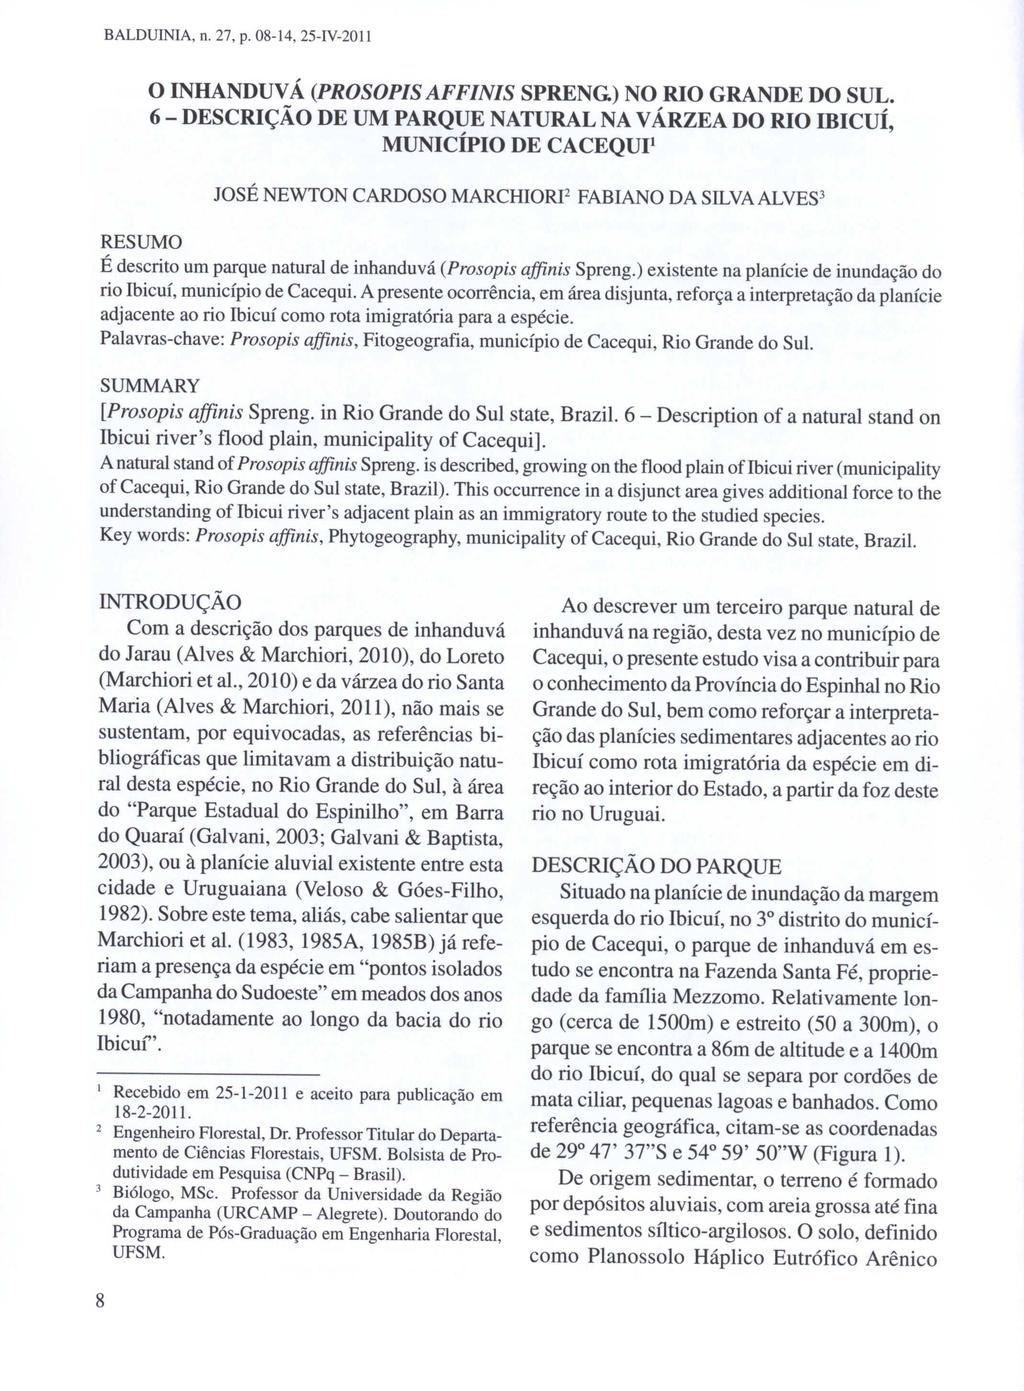 BALDUINIA, n. 27, p. 08-14, 25-IV-2011 o INHANDUV Á (PROSOPIS AFFINIS SPRENG) NO RIO GRANDE DO SUL.